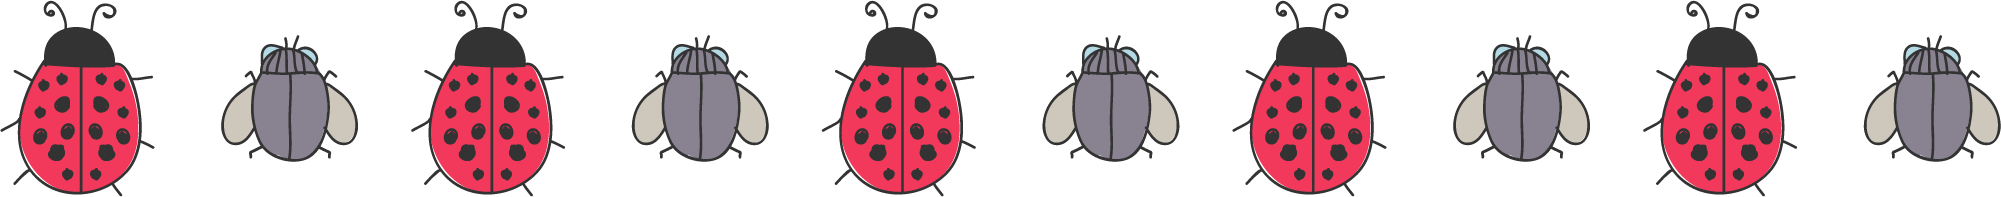 Ladybug serangga PNG Gambar latar belakang Transparan